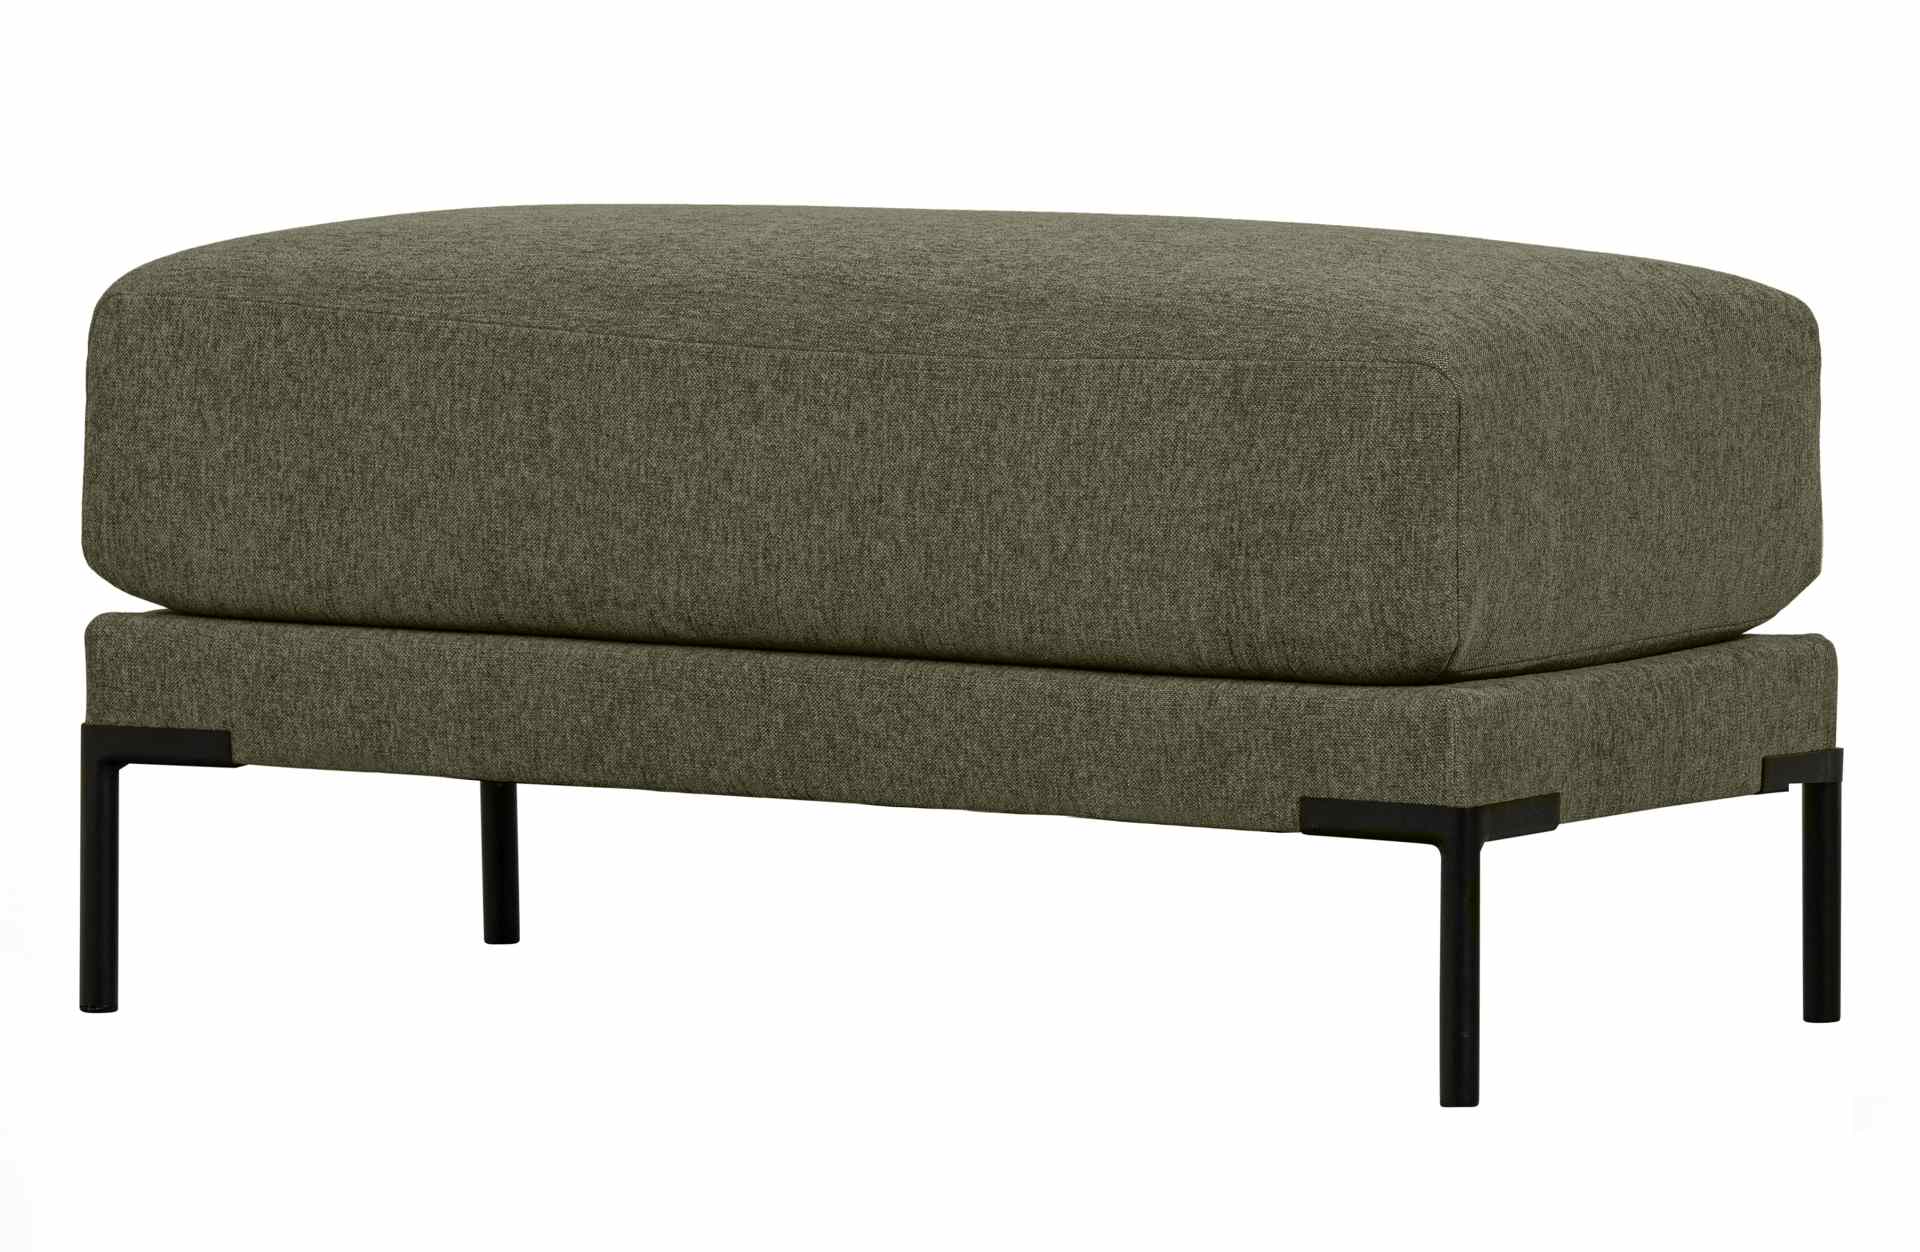 Das Modulsofa Couple Lounge überzeugt mit seinem modernen Design. Das Lounge Element mit der Ausführung 50 cm wurde aus Melange Stoff gefertigt, welcher einen einen grünen Farbton besitzen. Das Gestell ist aus Metall und hat eine schwarze Farbe. Das Eleme